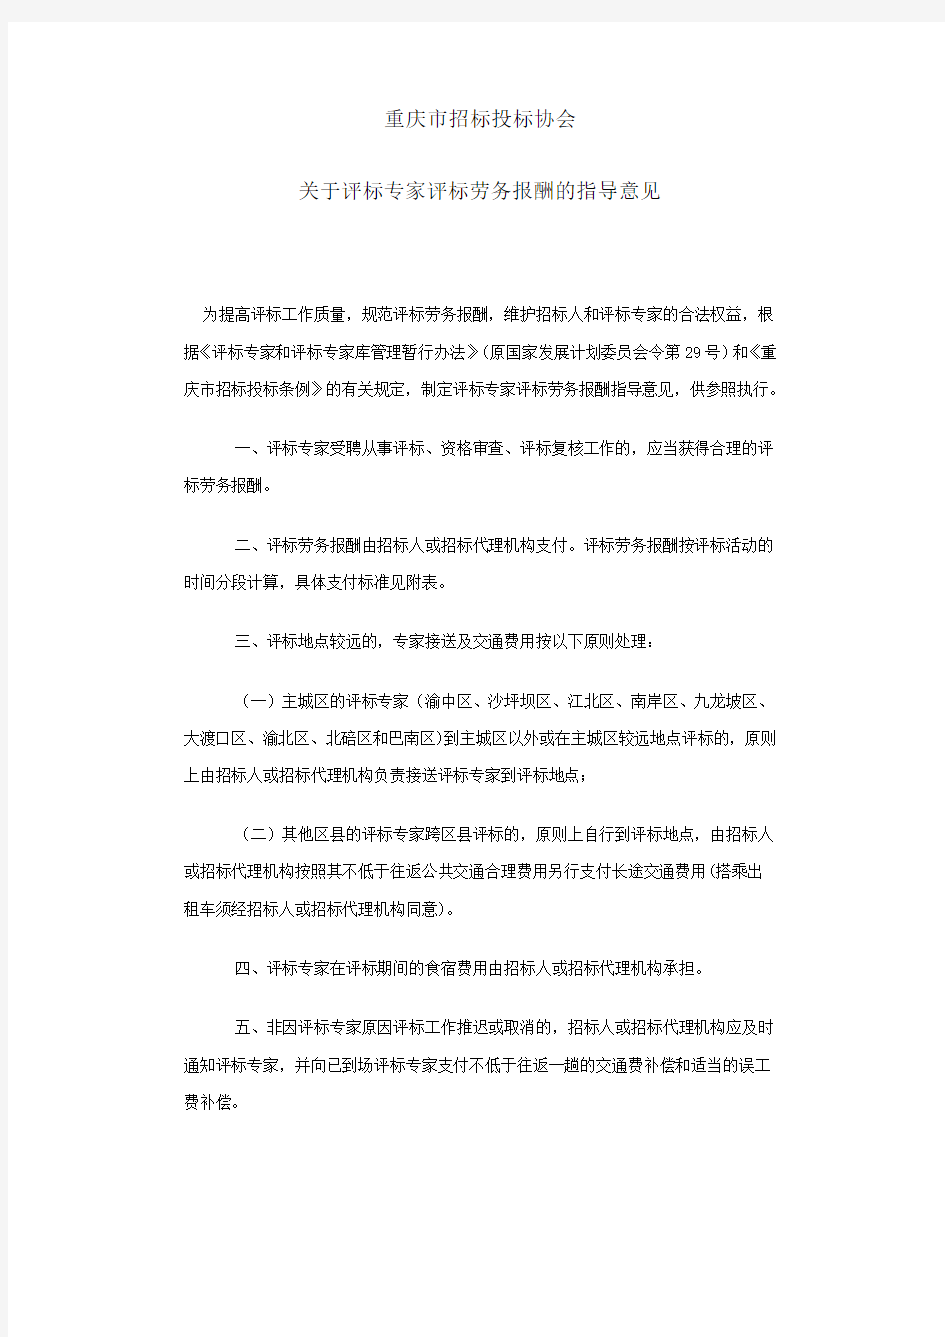 重庆市招标投标协会评标专家评标劳务报酬